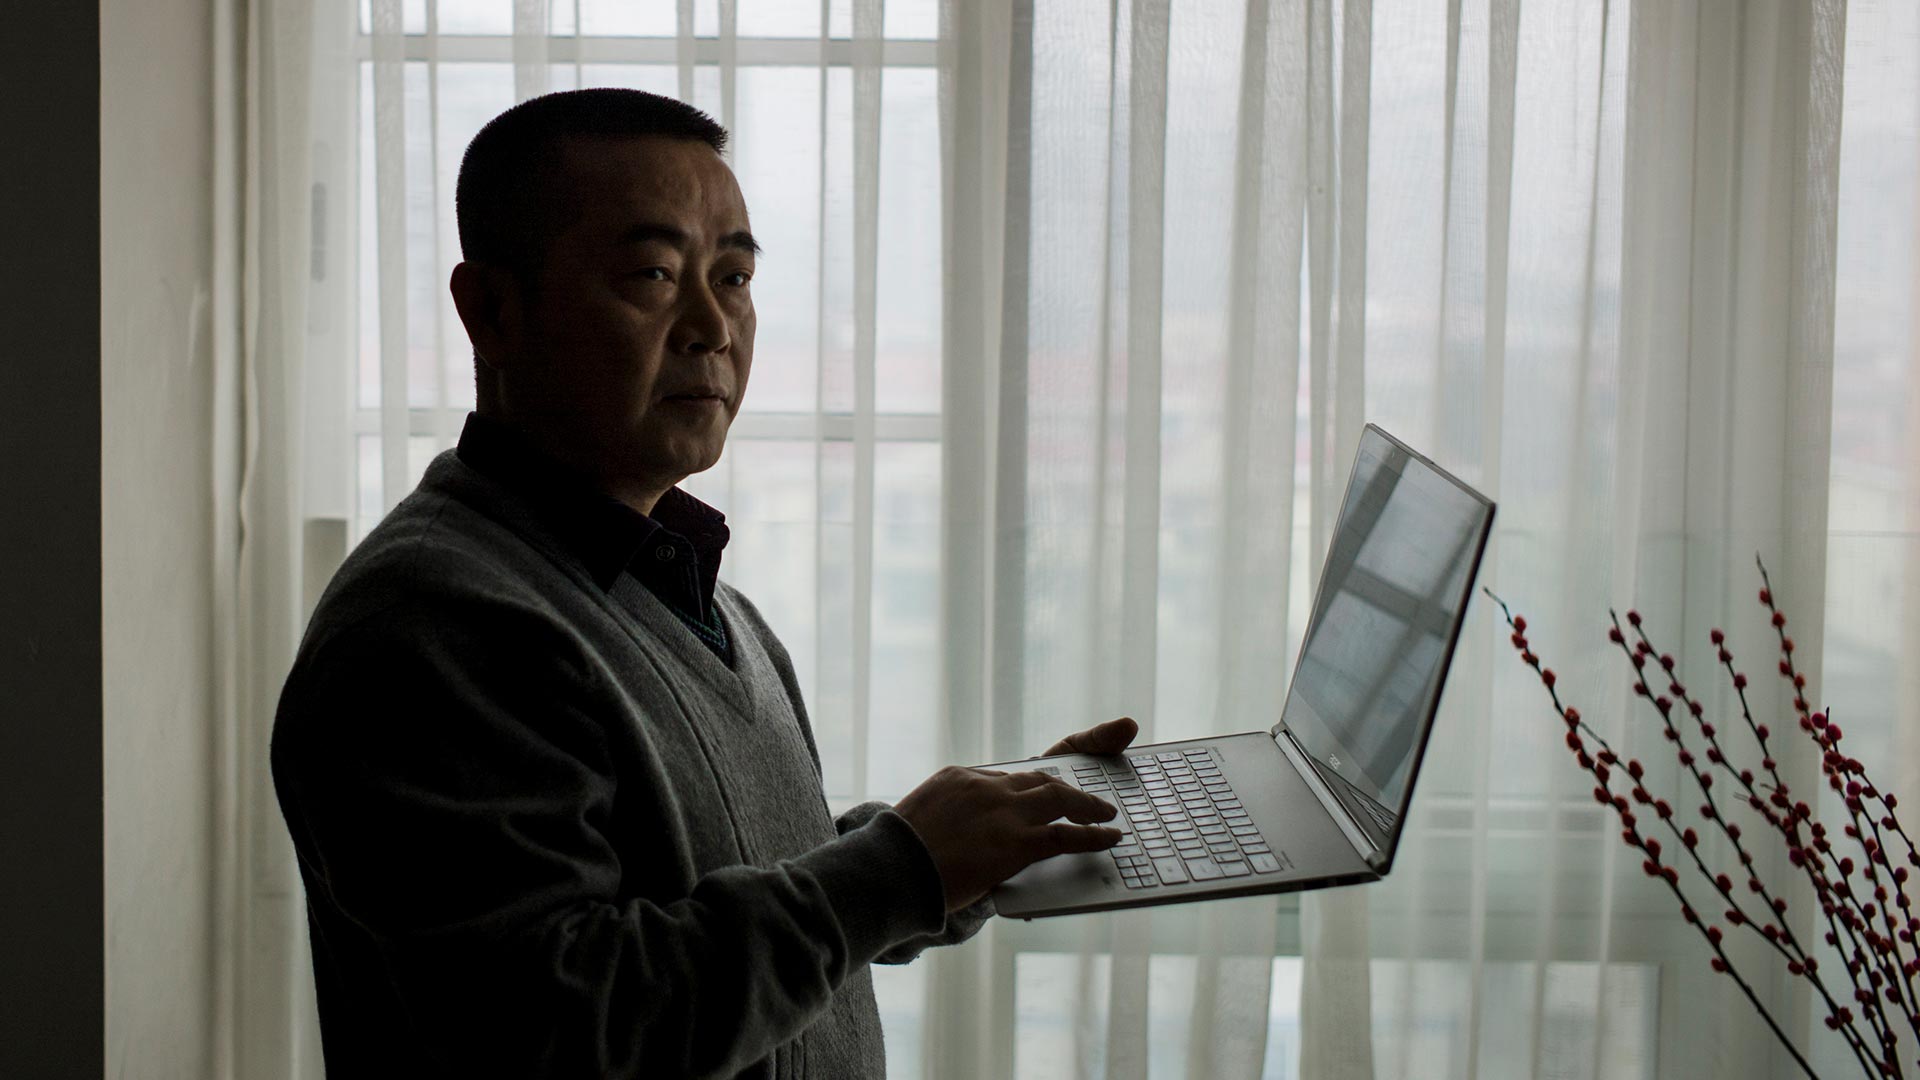 Doce años de cárcel para el activista y periodista chino Huang Qi